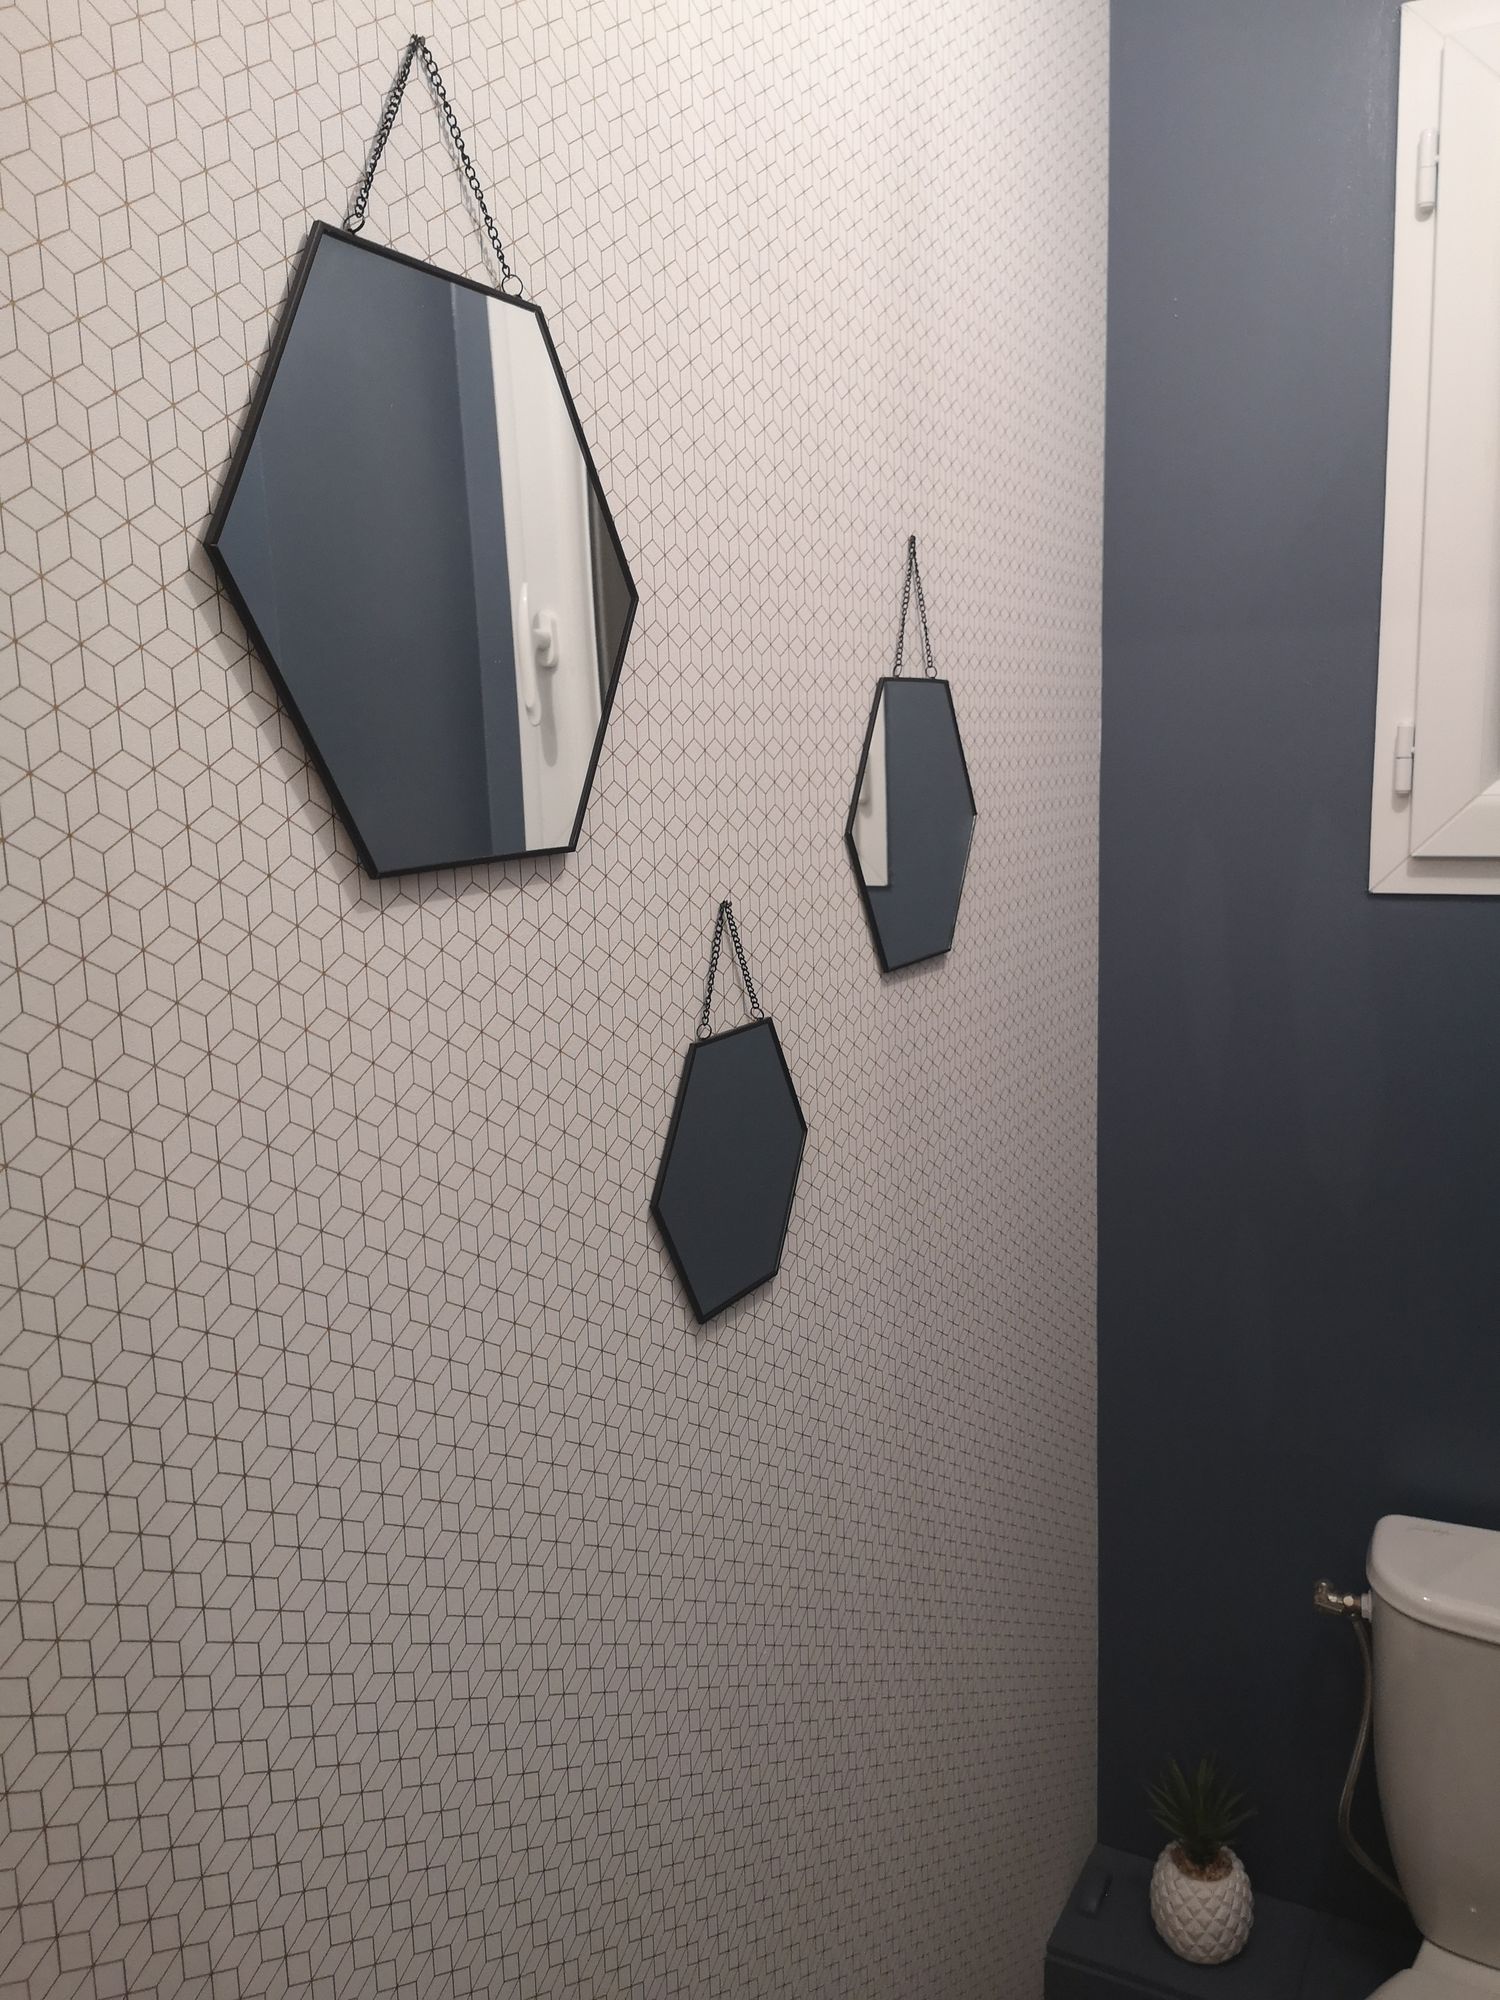 Déco toilettes : 47 idées et inspirations pour décorer ses WC